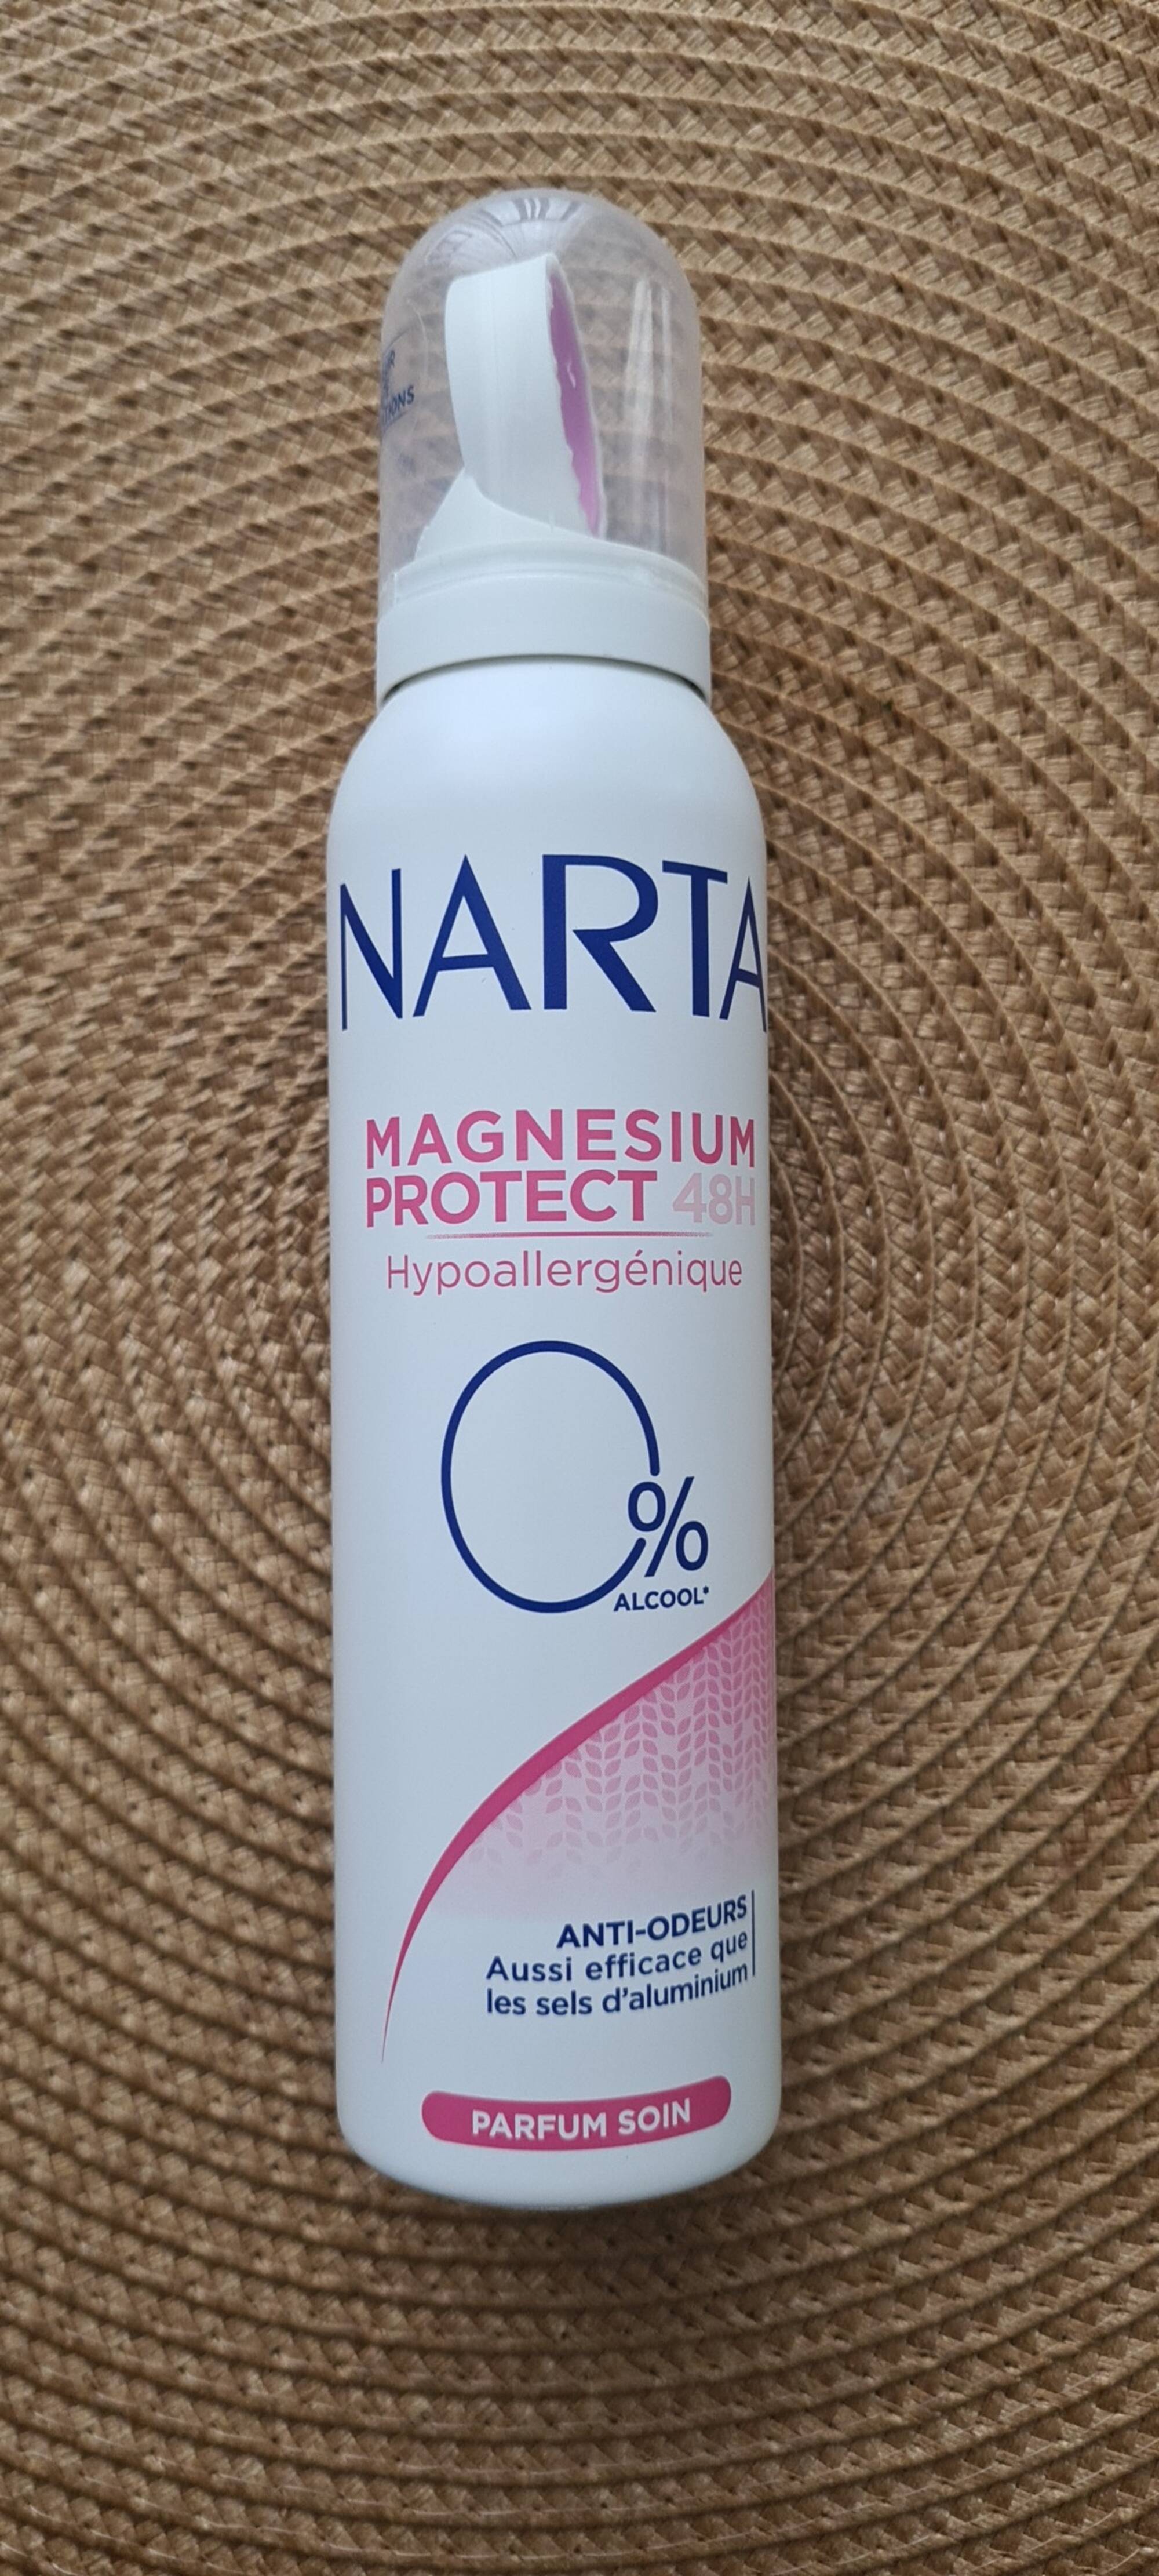 NARTA - Magnesium protect 48H - Anti-odeurs